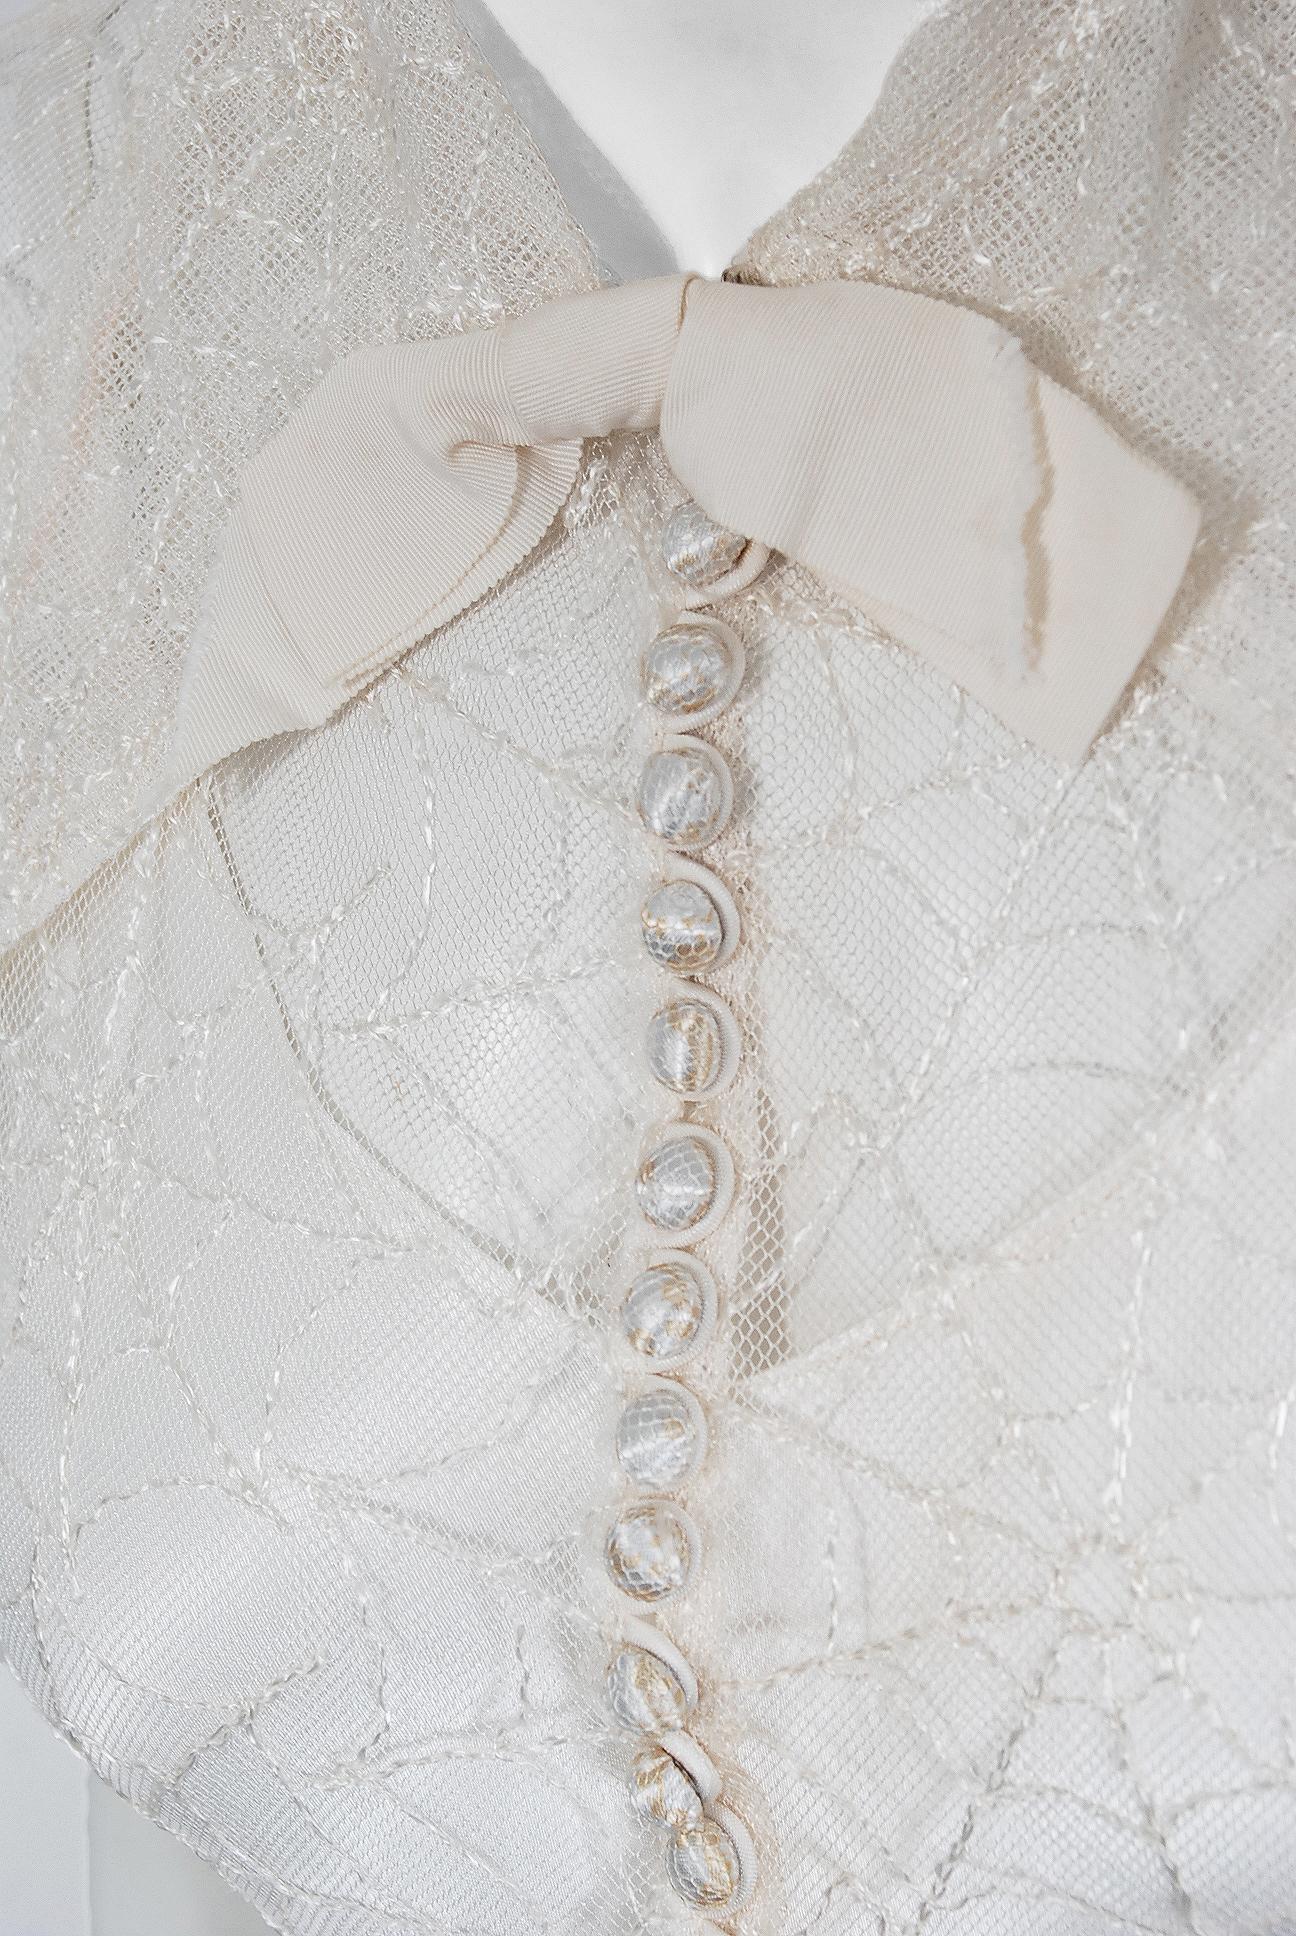 spider web wedding dress